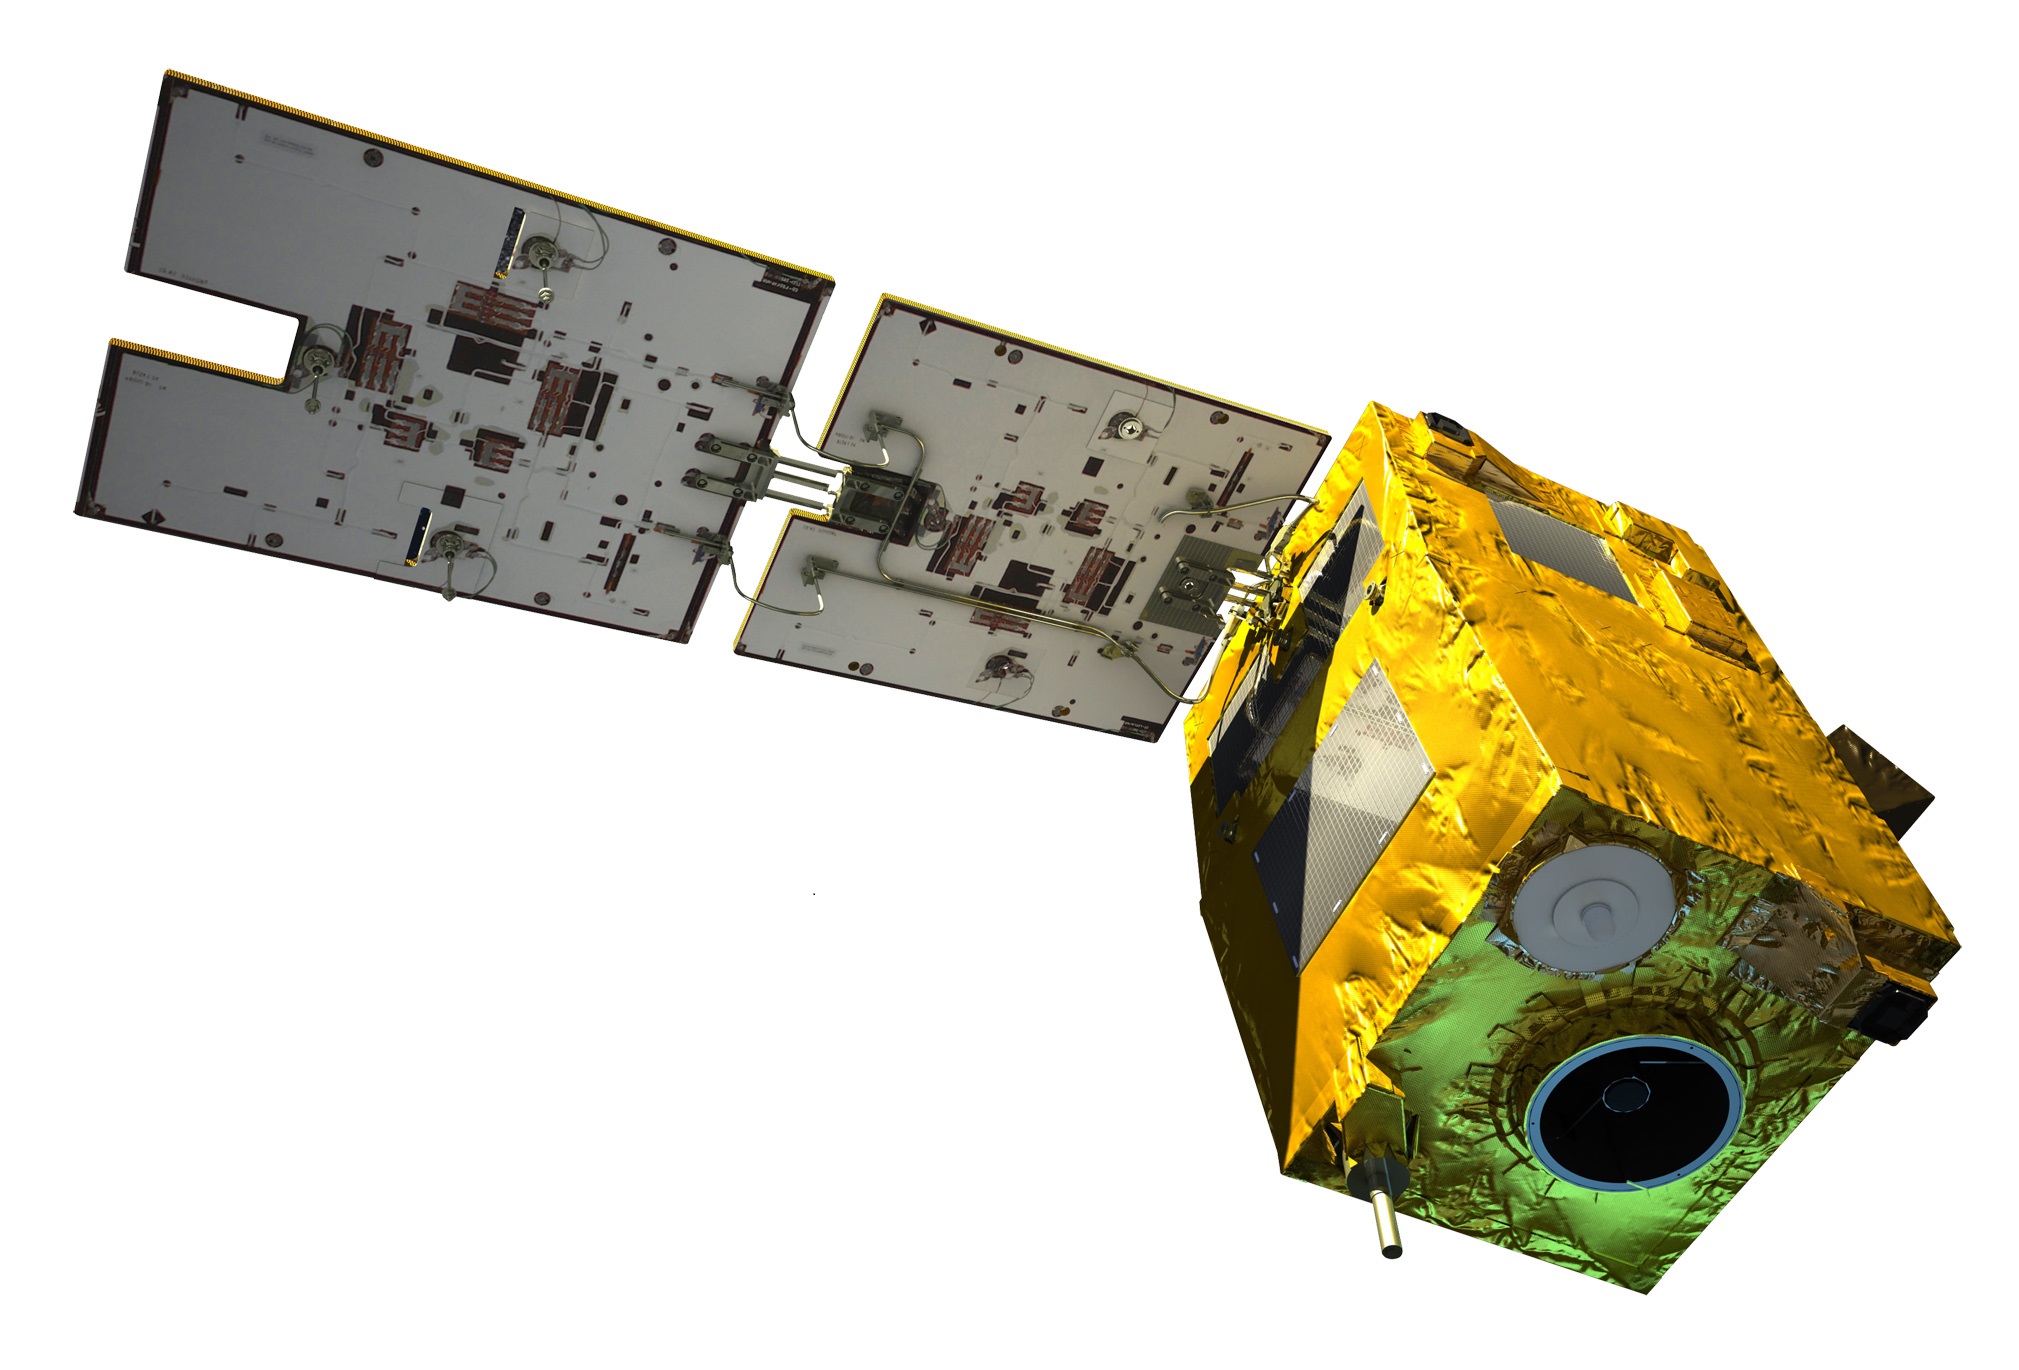 Le satellite Algérien Alsat-2A à haute résolution, fête ses 10 ans en orbite